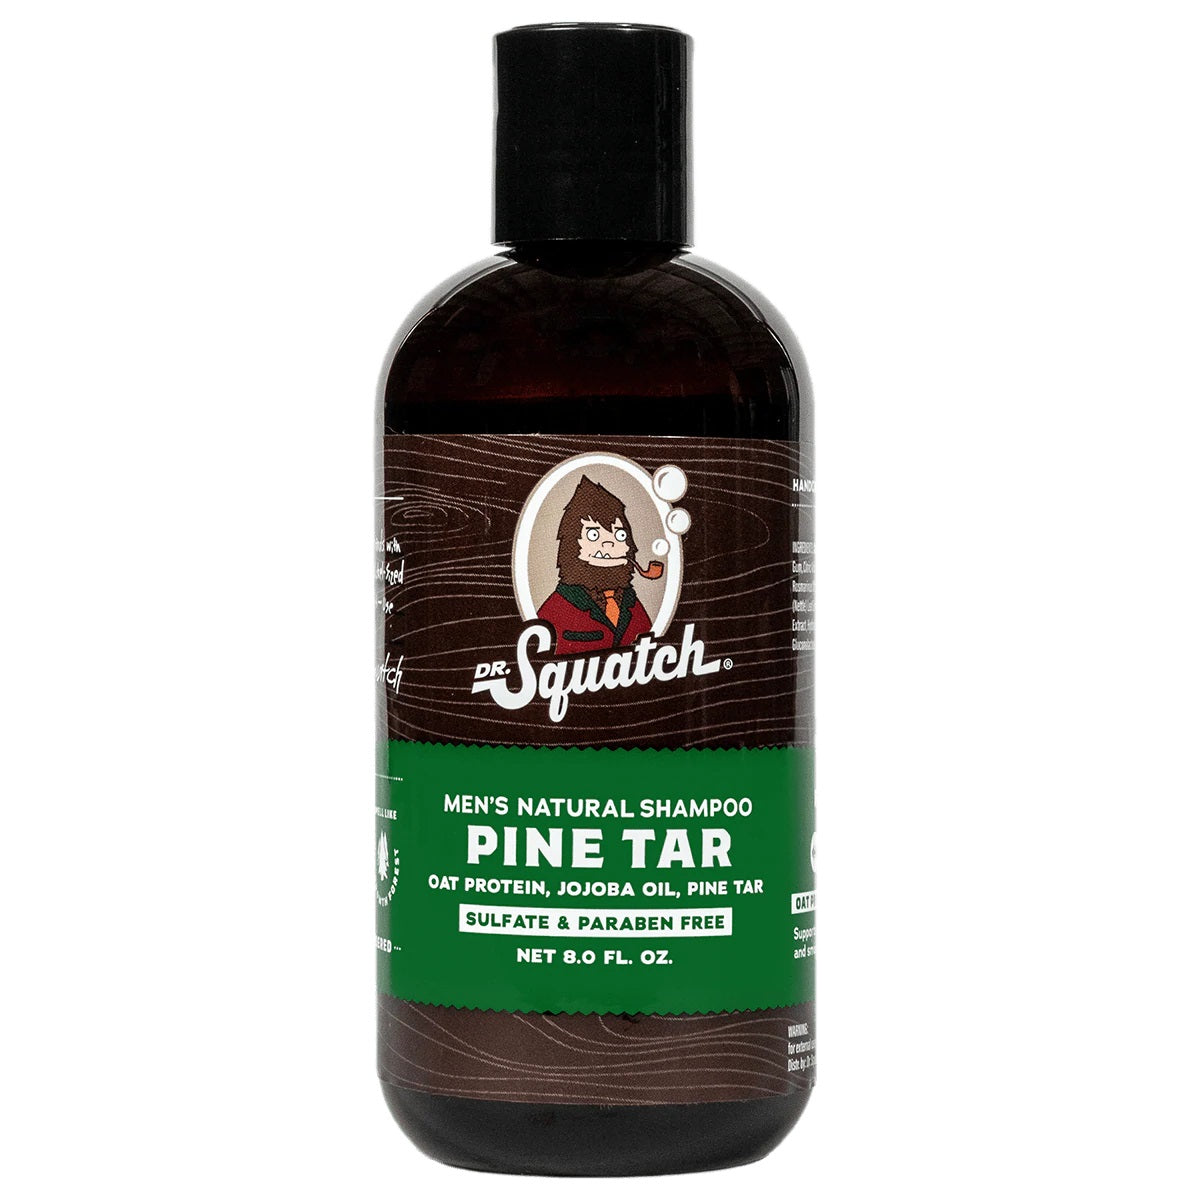 Dr. Squatch Pine Tar Shampoo or Conditioner